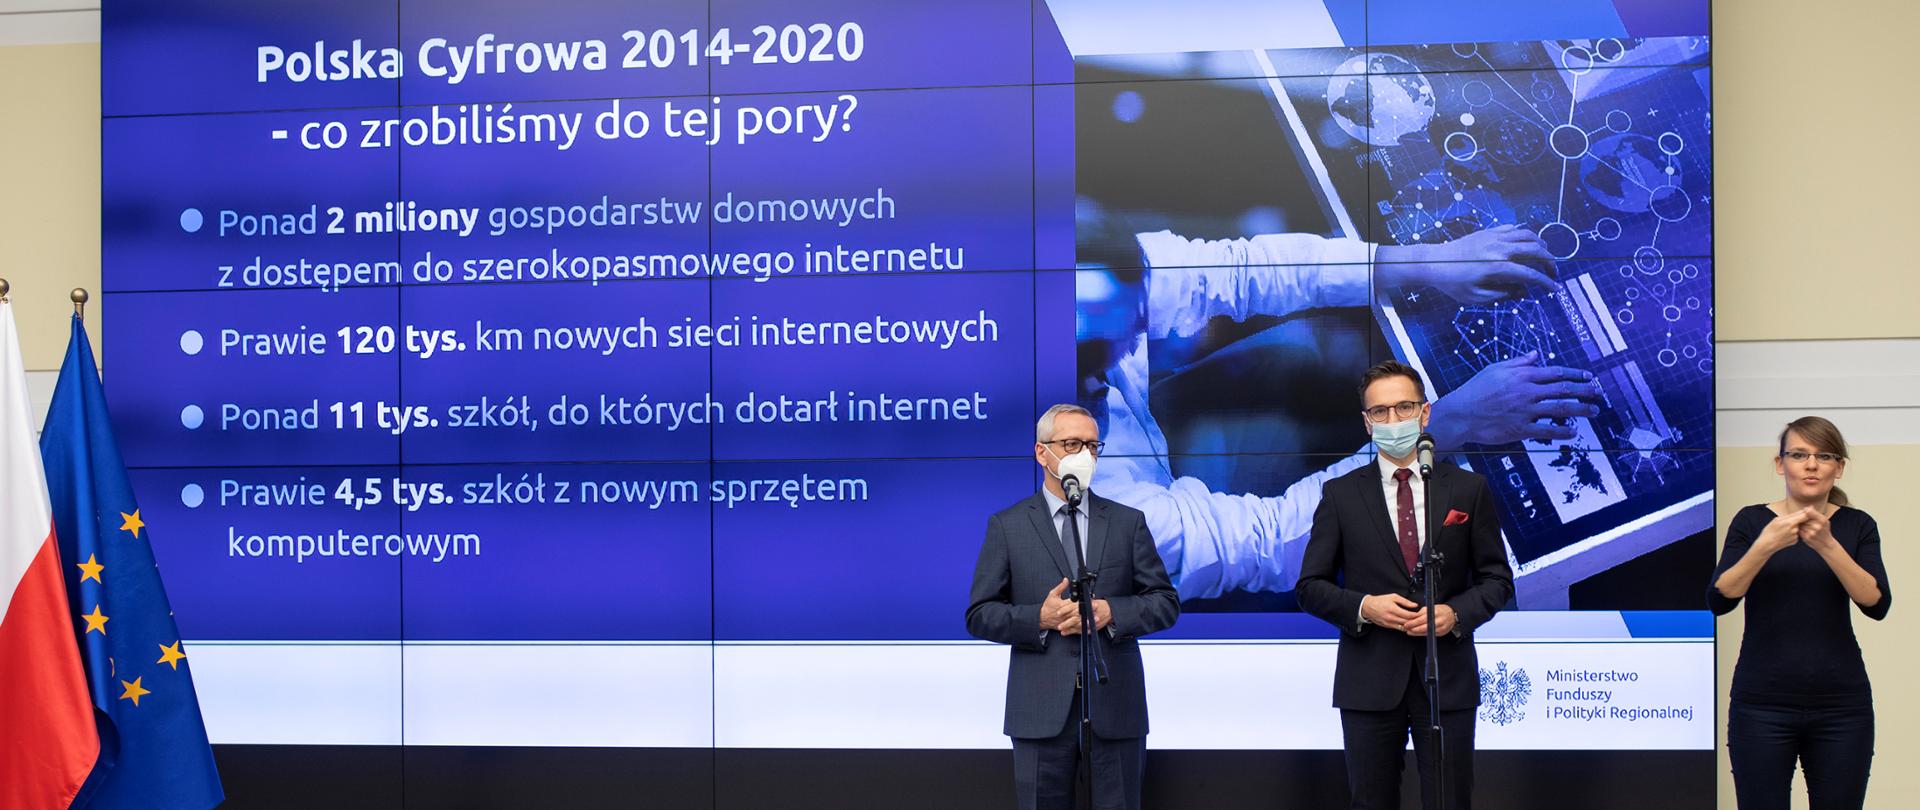 Ministrowie Marek Zagórski i Waldemar Buda podczas konferencji prasowej - stoją przed mikrofonami, z ich lewej strony - tłumaczka migowa. Na nimi ekran prezentacji z treścią: Polska Cyfrowa 2014-2020 - co rozbiliśmy do tej pory?